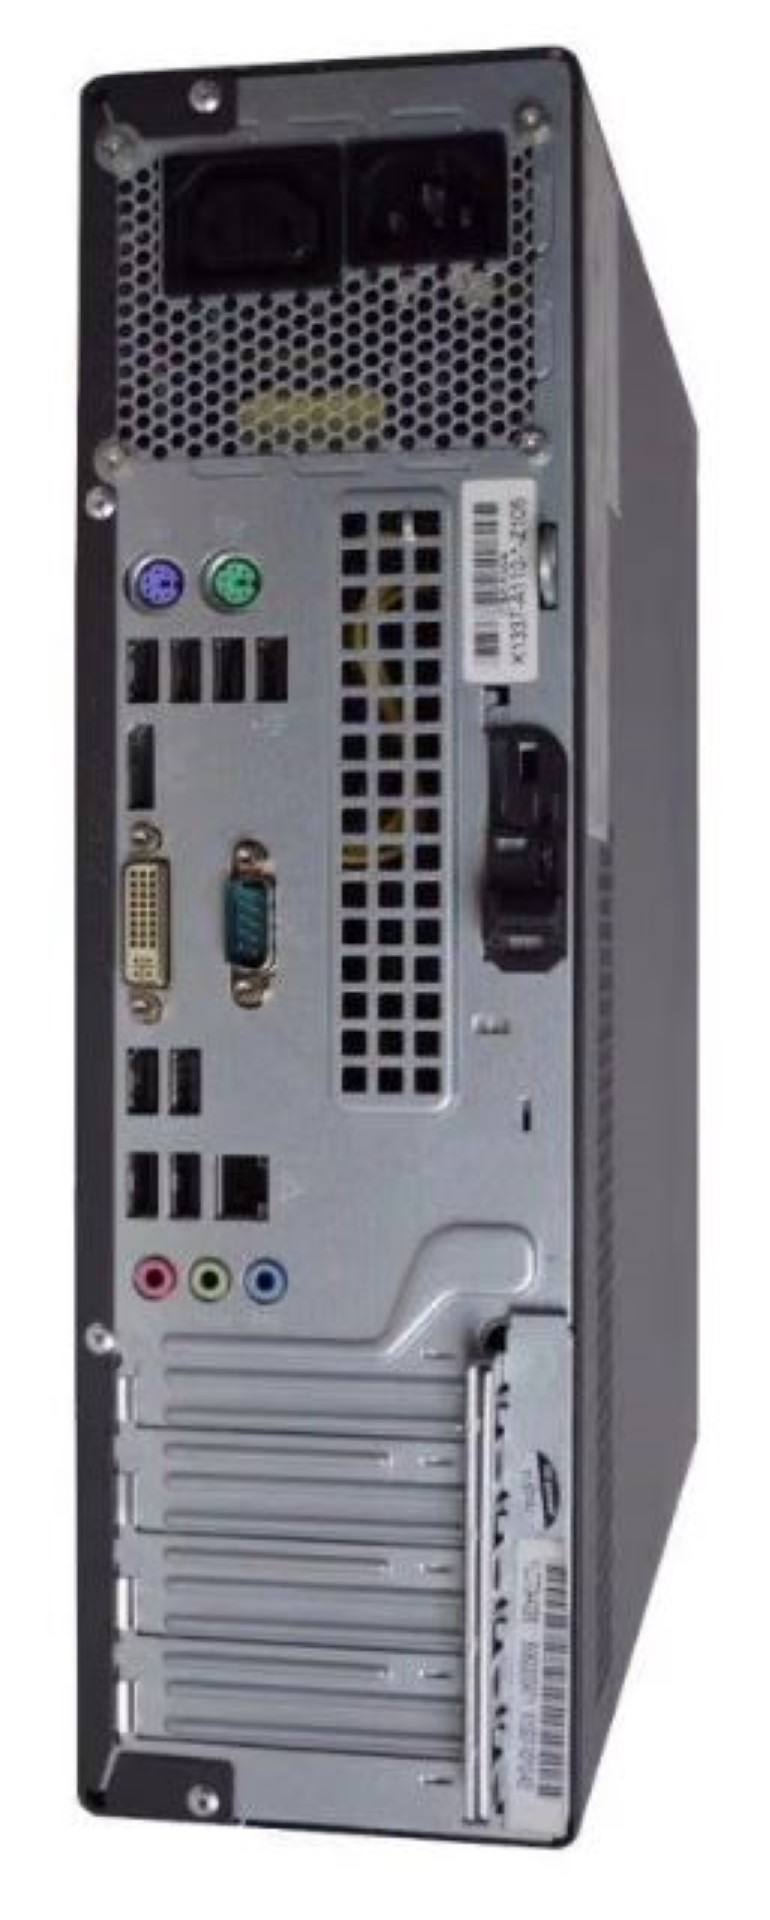 Desktop Fujitsu ESPRIMO P9900 E-STARS Desktop Used A i5-650 3.2 Ghz 2Gb Memory Ddr3-1333 Win7 Pro Integrated (Copy)